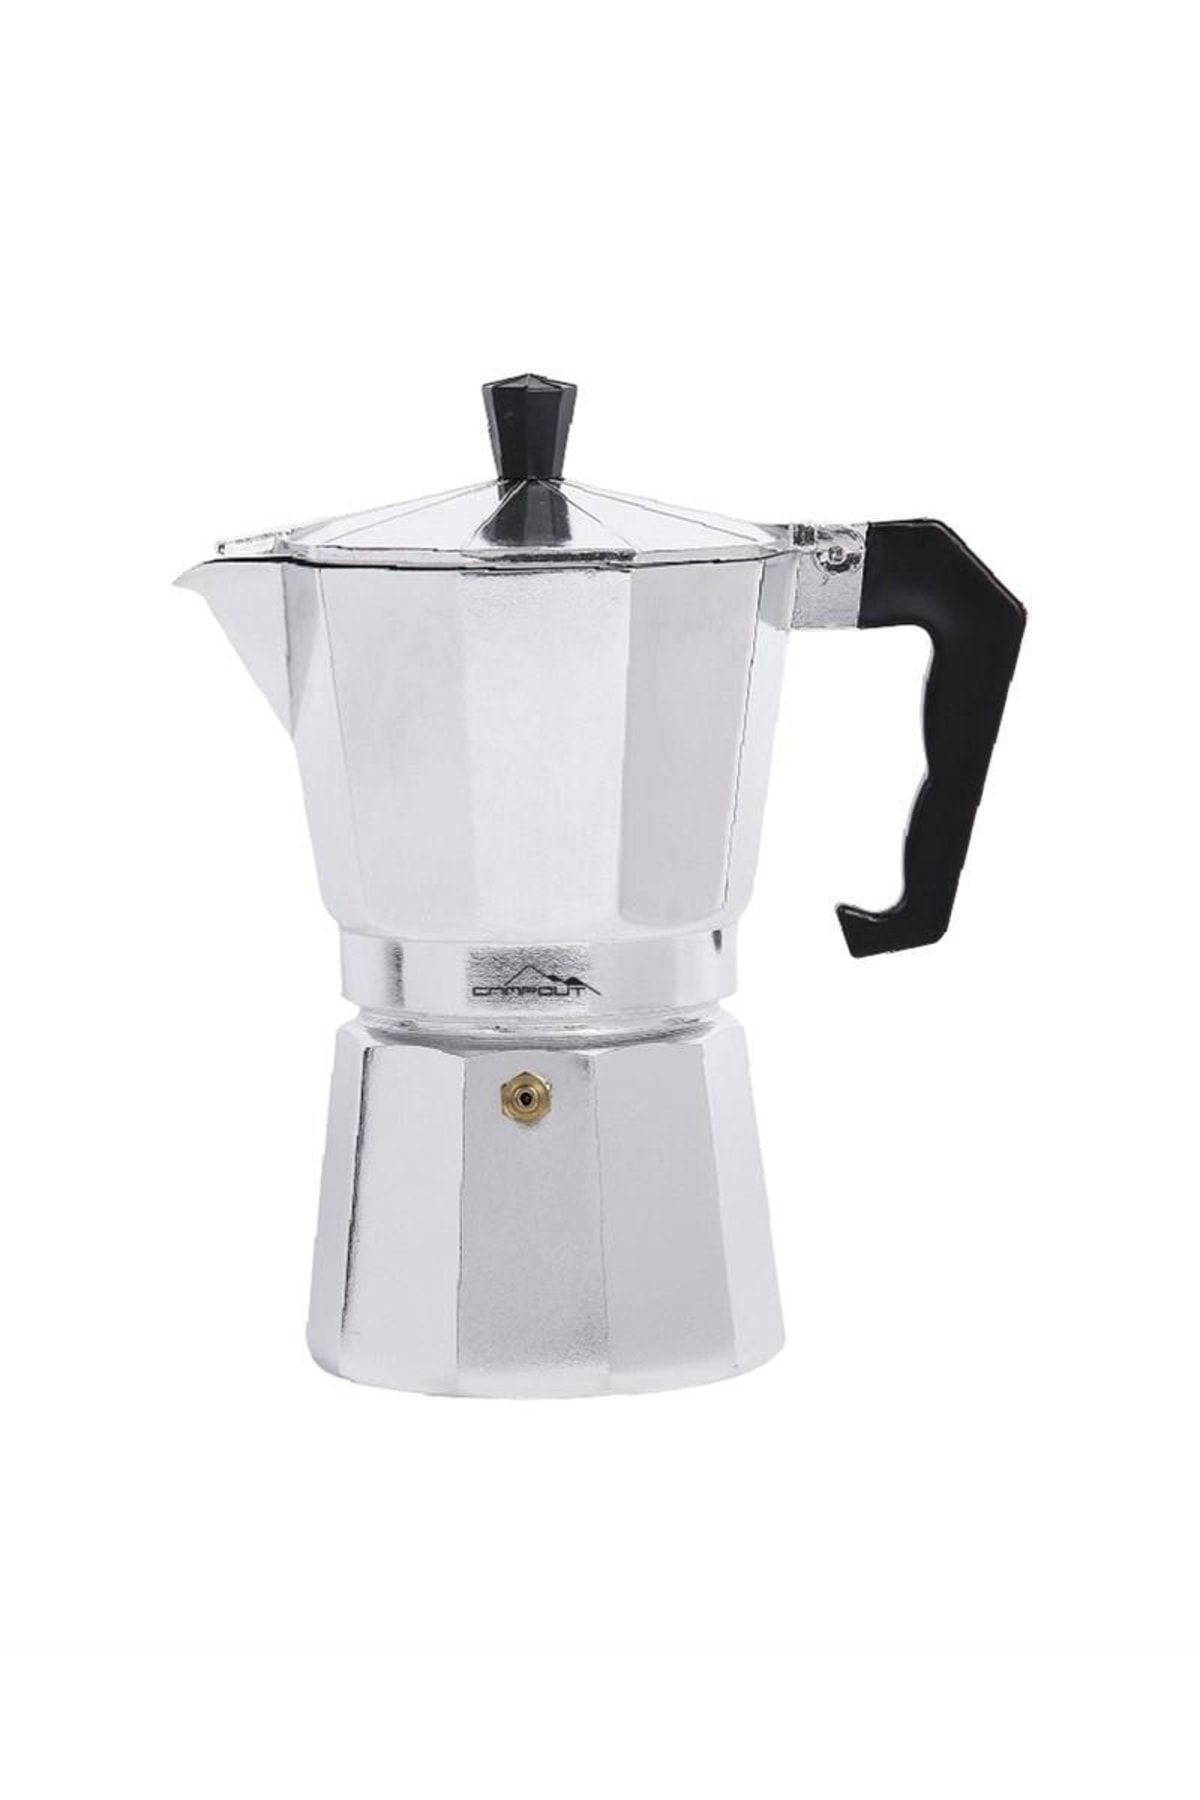 Nurgaz Gümüş Campout Espresso Mocha Pot 9 Bardak Kapasiteli-ng Emp-b